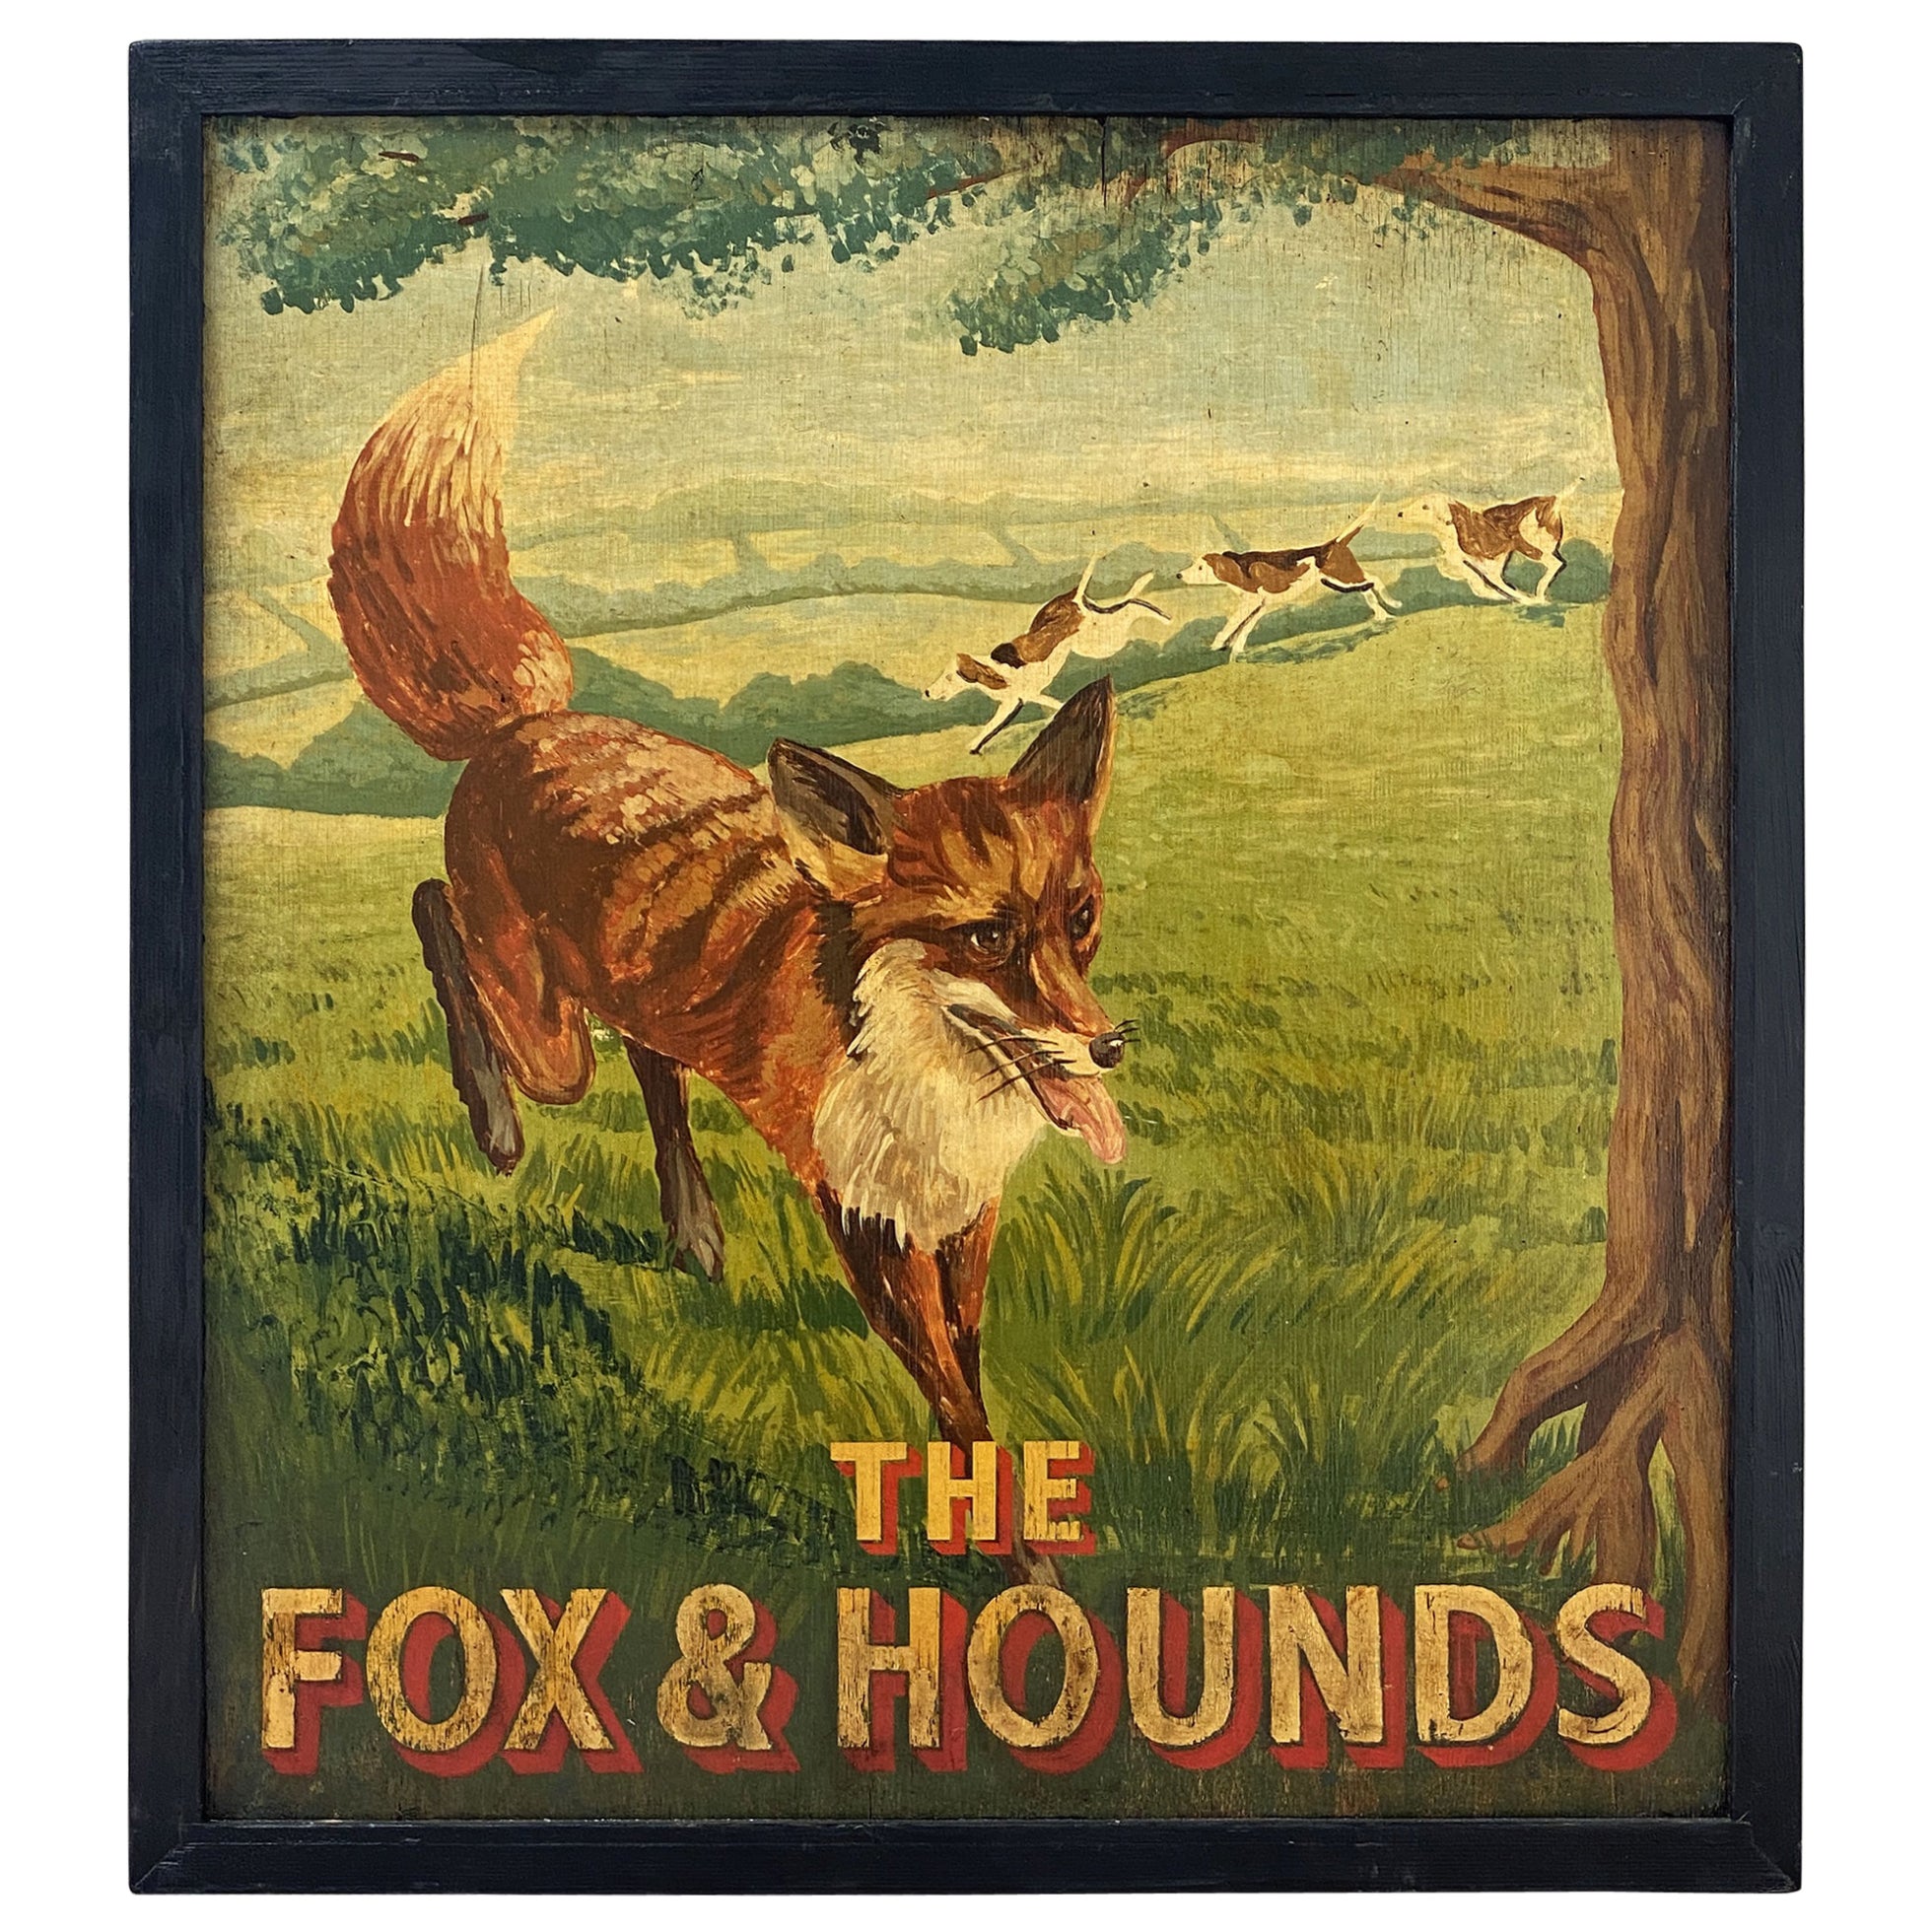 Enseigne de pub anglaise, « The Fox & Hounds »